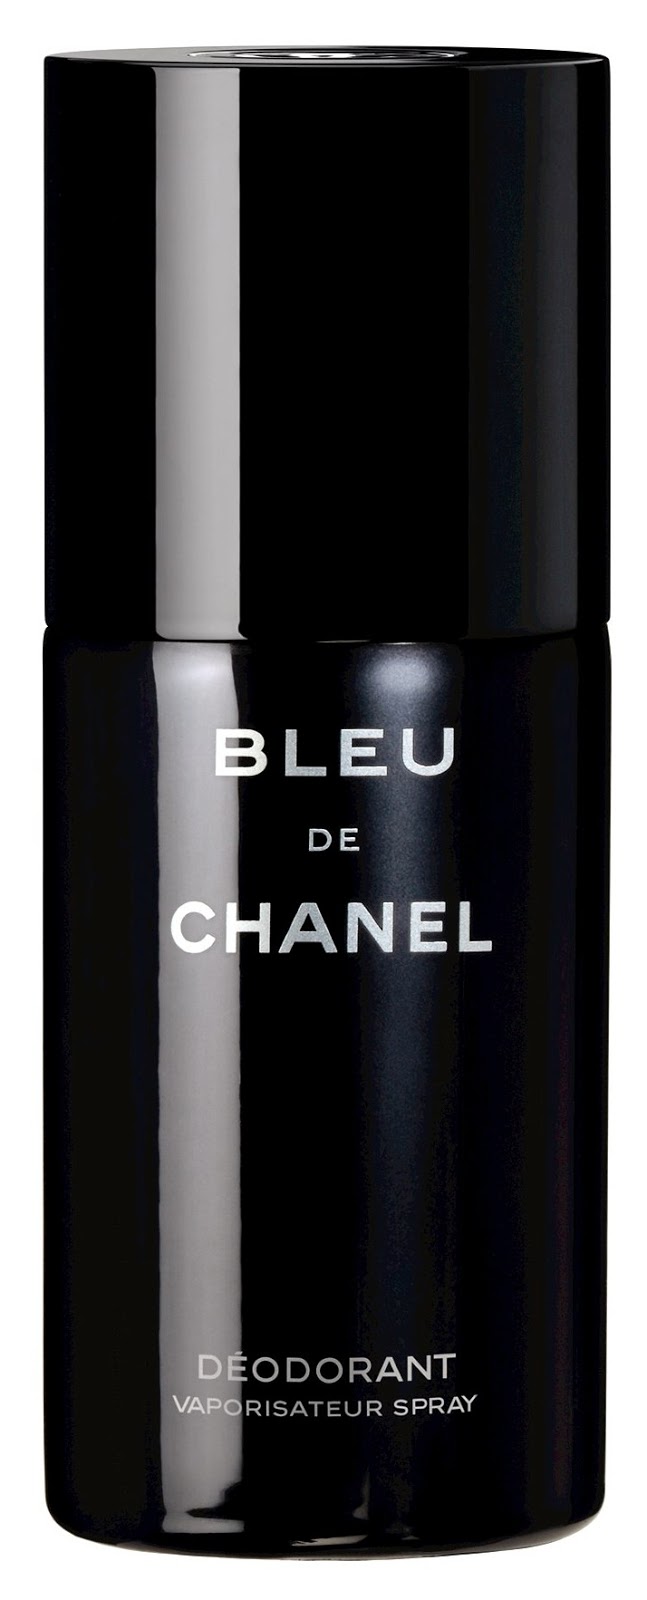 Make Up For Dolls: Chanel in Black & Blue